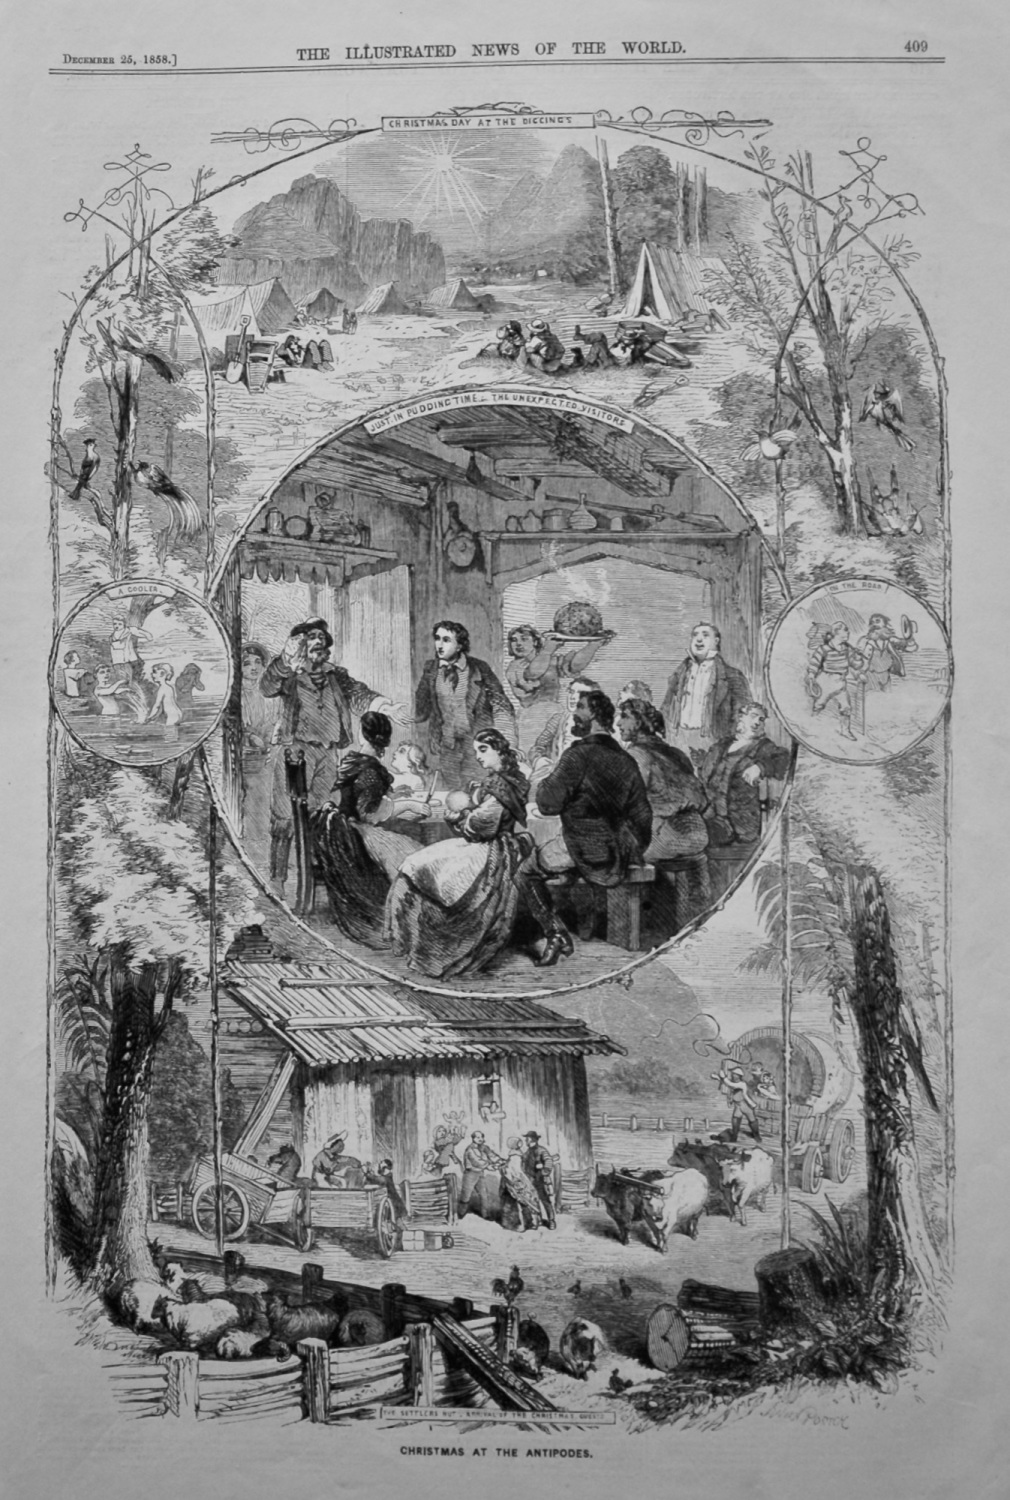 Christmas at the Antipodes. 1858.